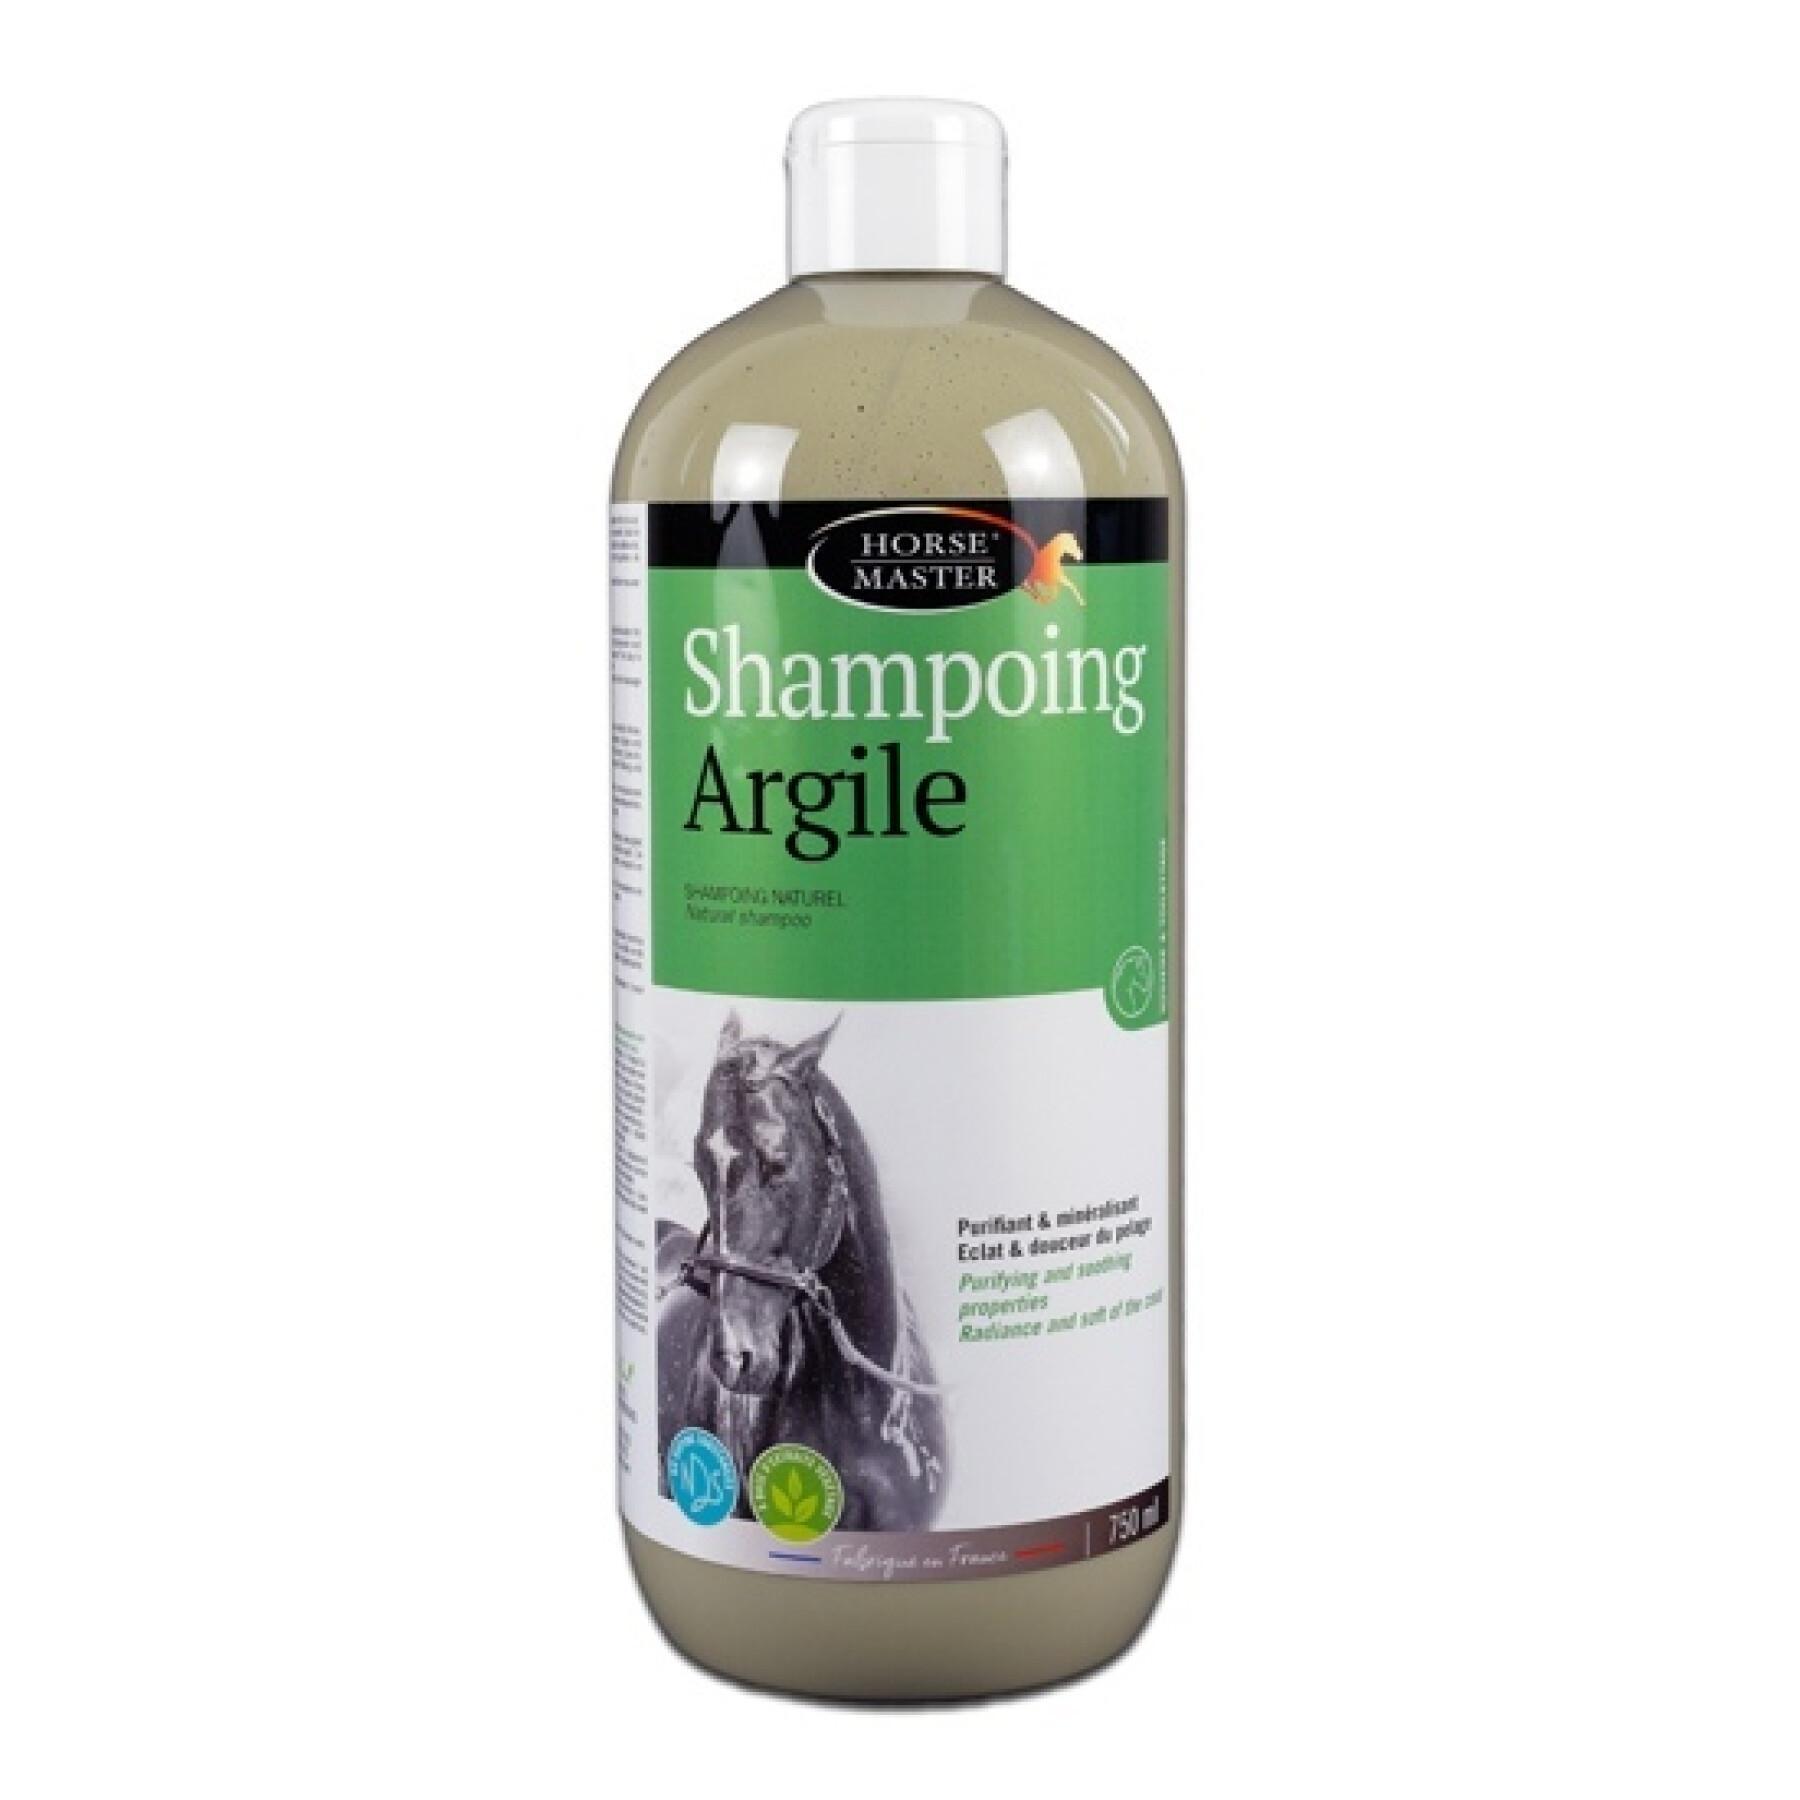 Shampoo per cavalli Horse Master Argile 750 ml - Per la doccia -  Medicazioni - Cavallo a riposo